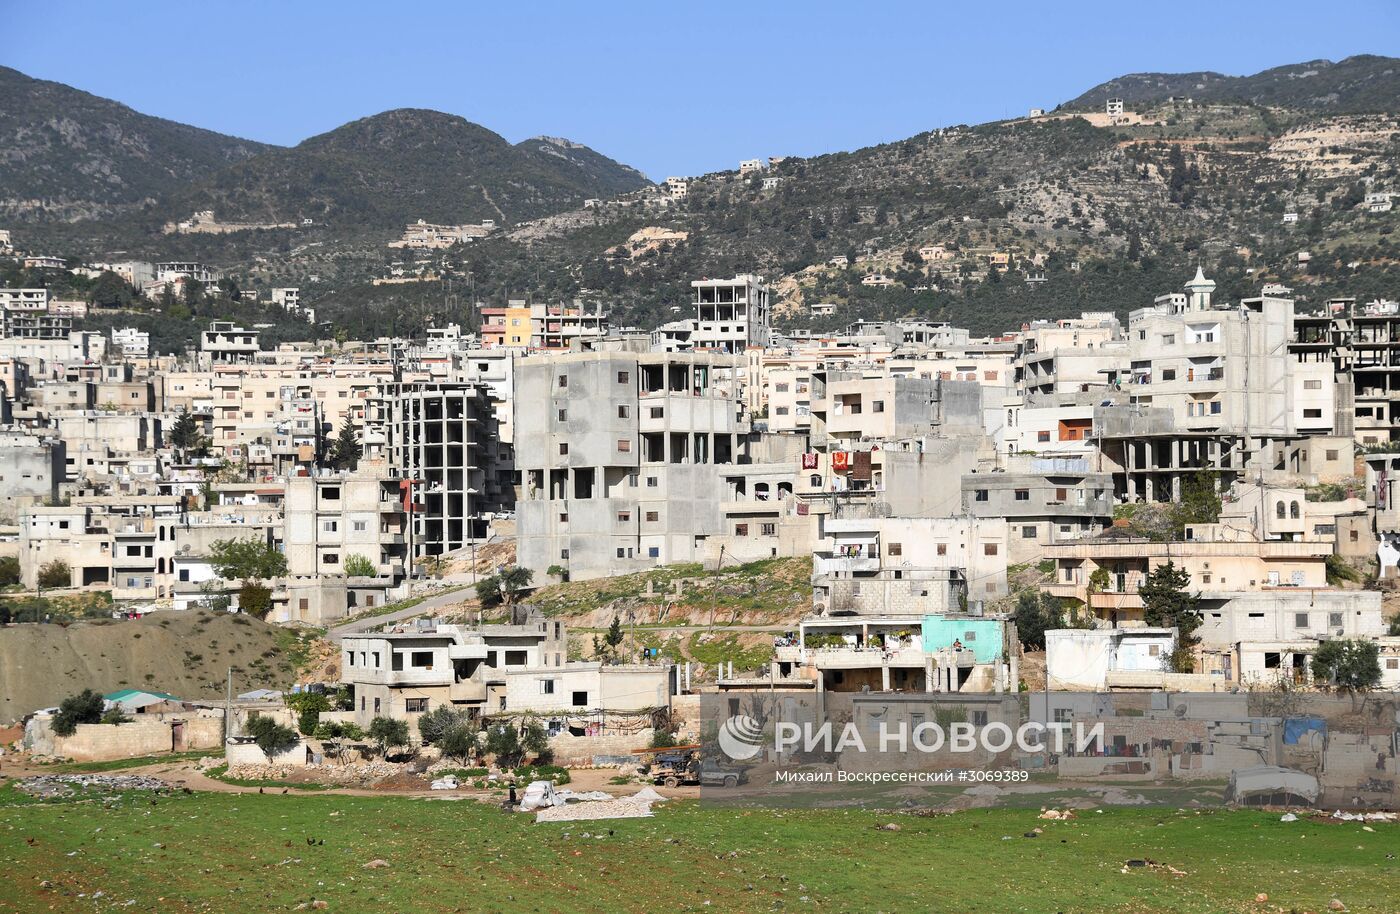 Виды Сирии между Хамой и Тишрином